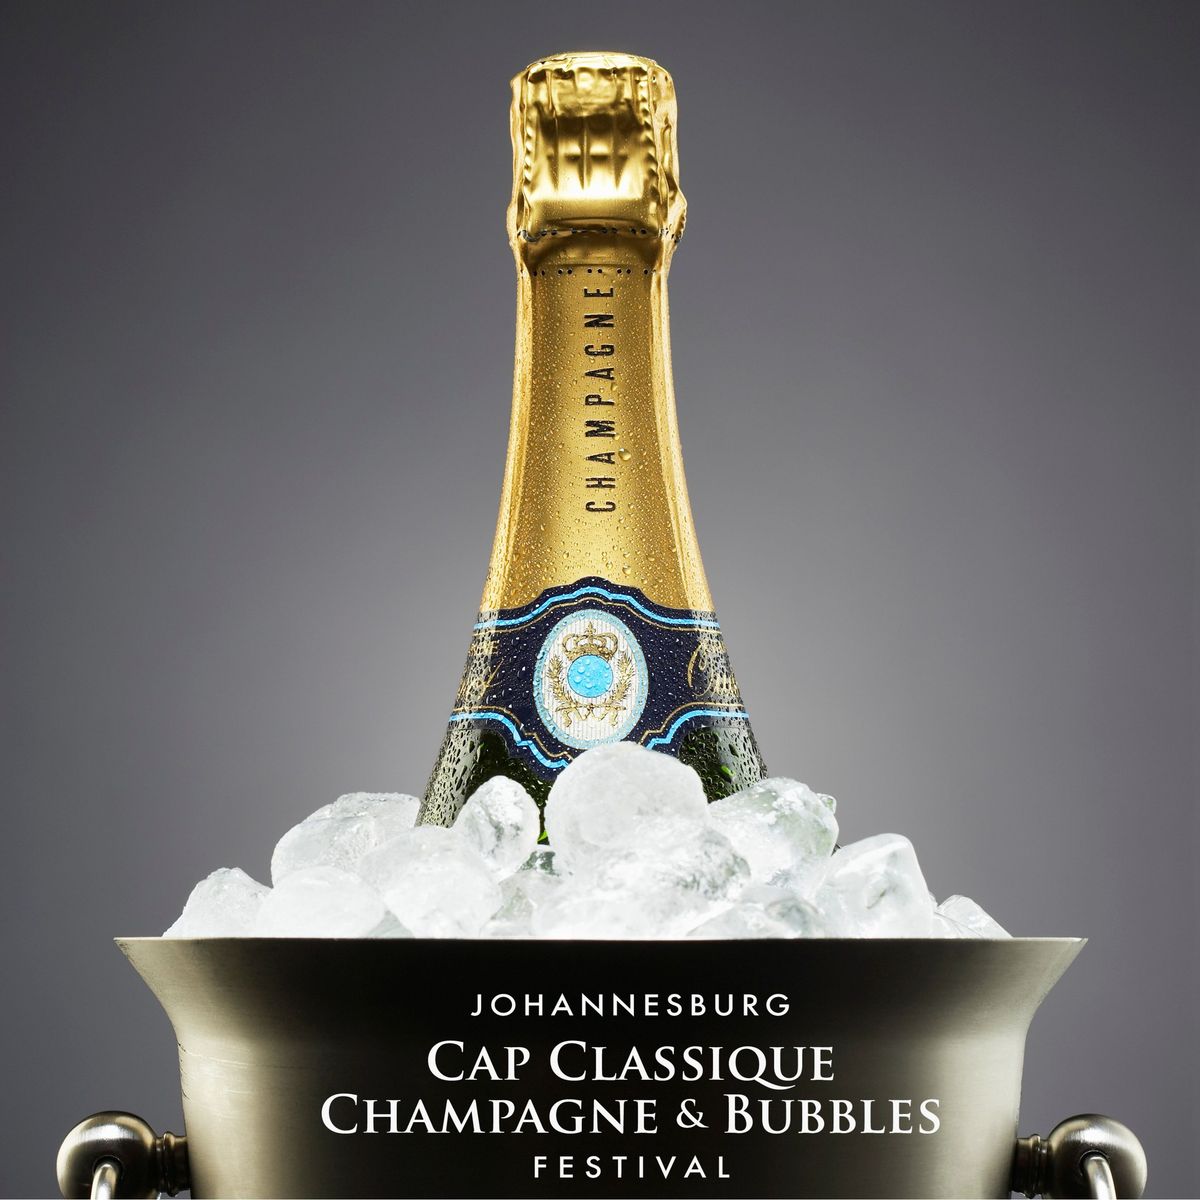 The Johannesburg Cap Classique, Champagne & Bubbles Festival